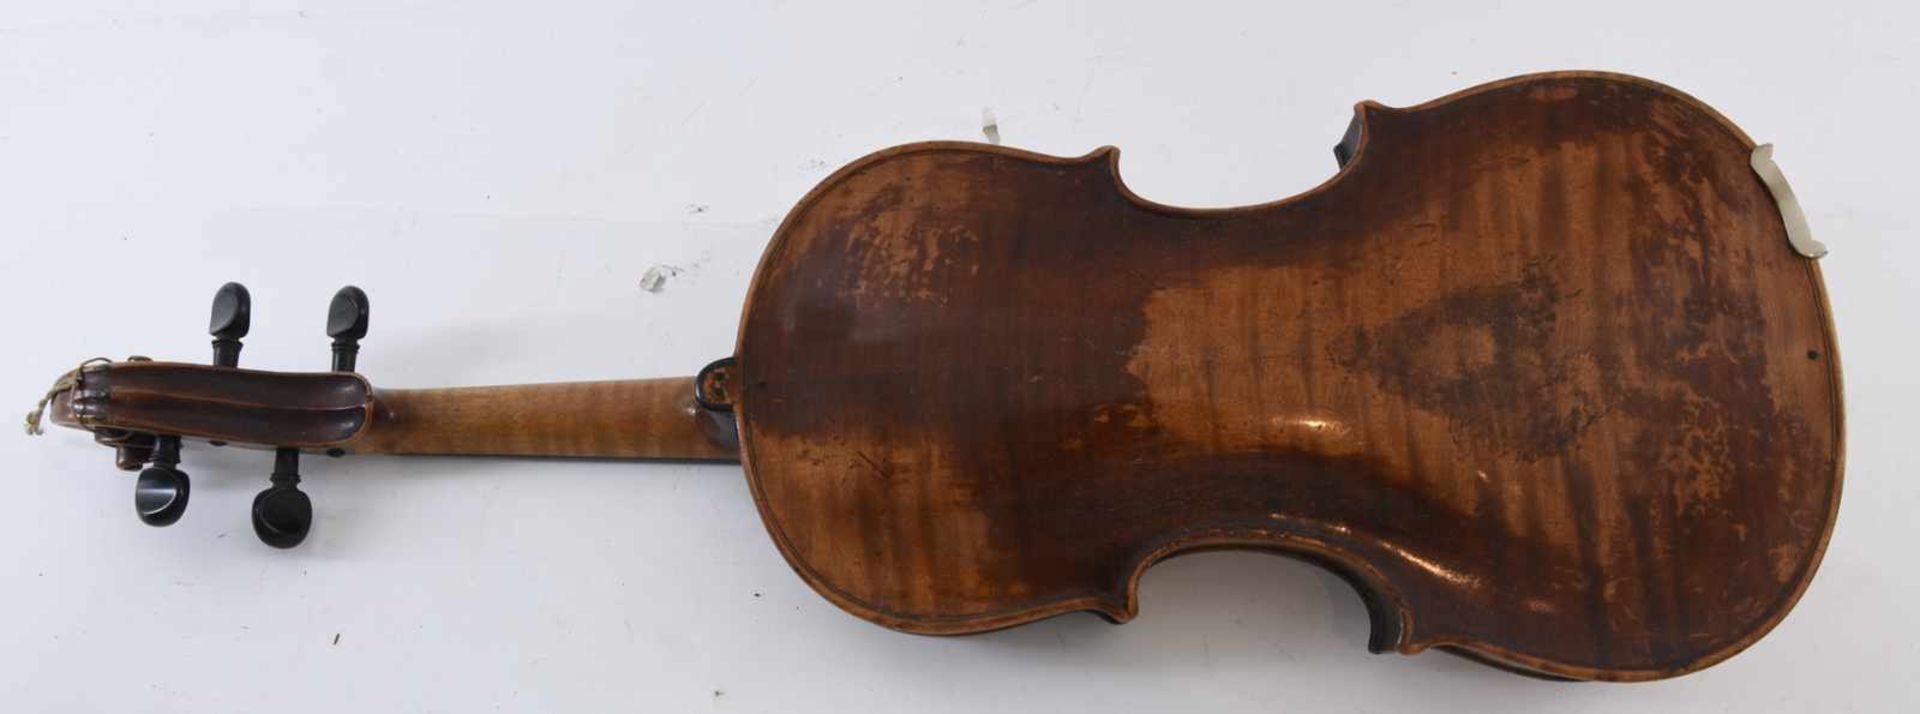 FRANCESCO RUGGERI. Nach. Geige mit Bogen und Kasten,Modell von 1676, um 1900 Wohl um 1900 - Bild 4 aus 9